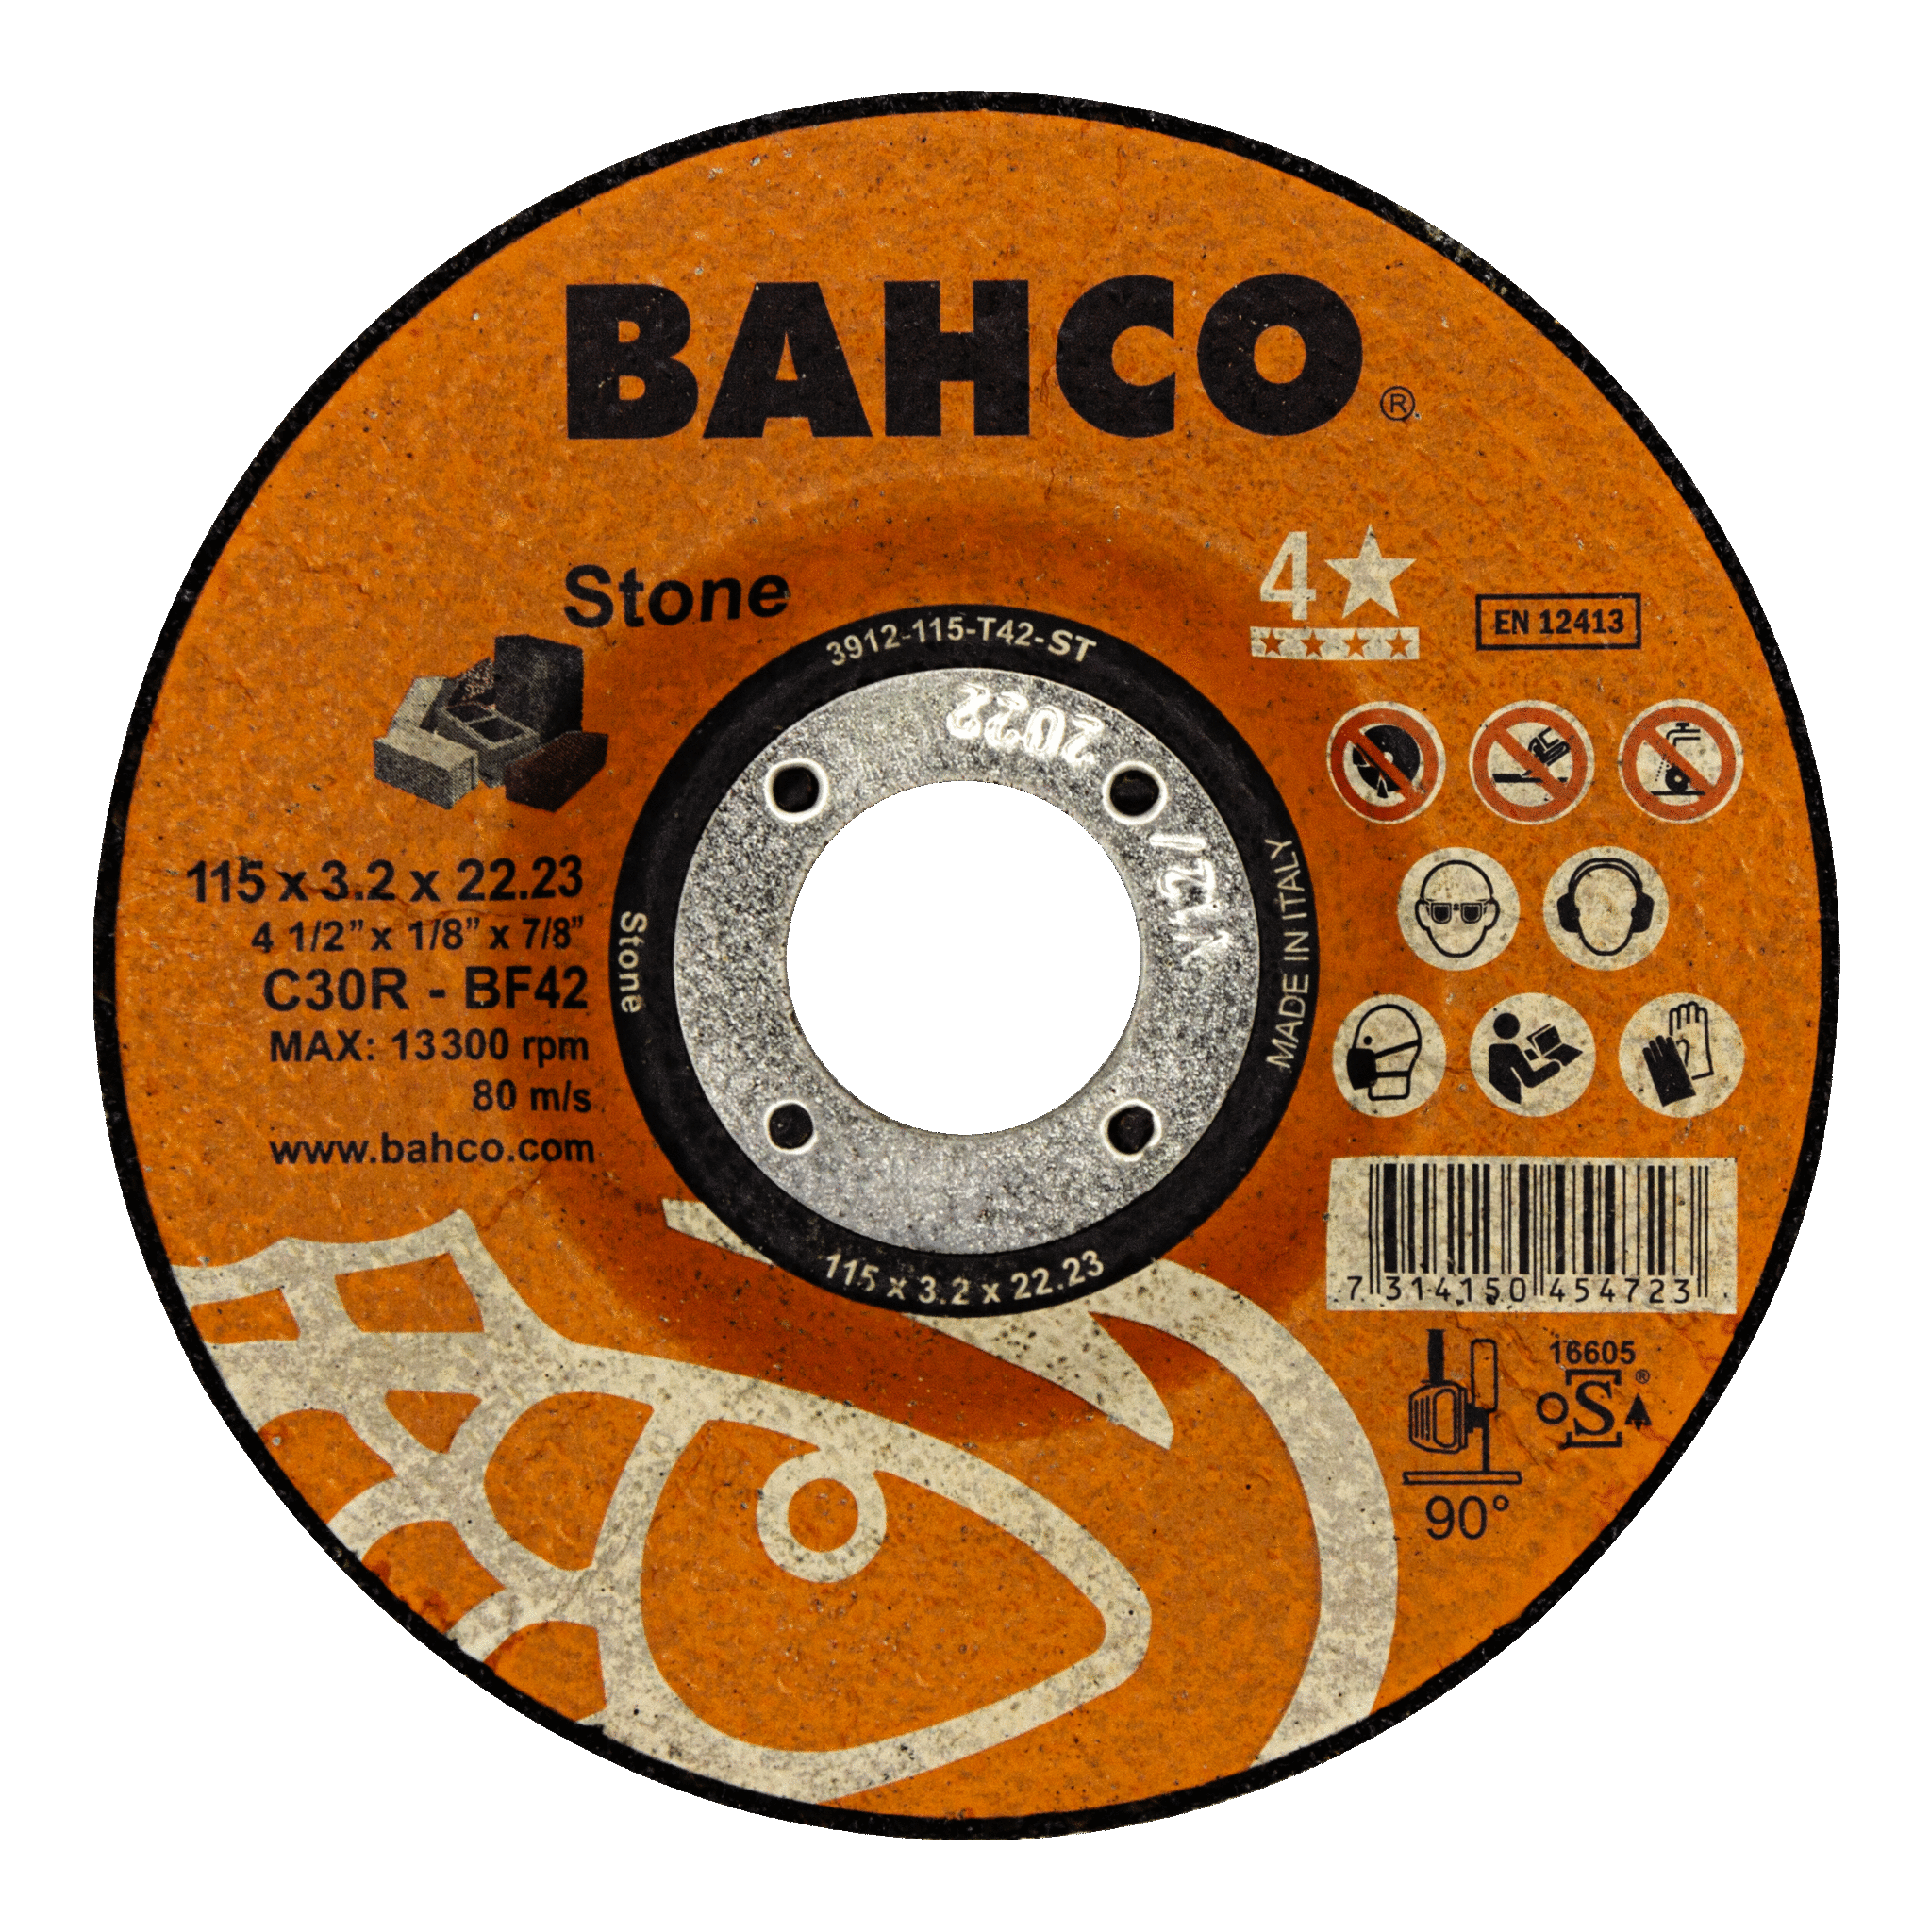 Высокопроизводительные дисковые пилы для строительства и работы с камнем 230 x 3.2 x 22.23mm BAHCO 3912-230-T42-ST